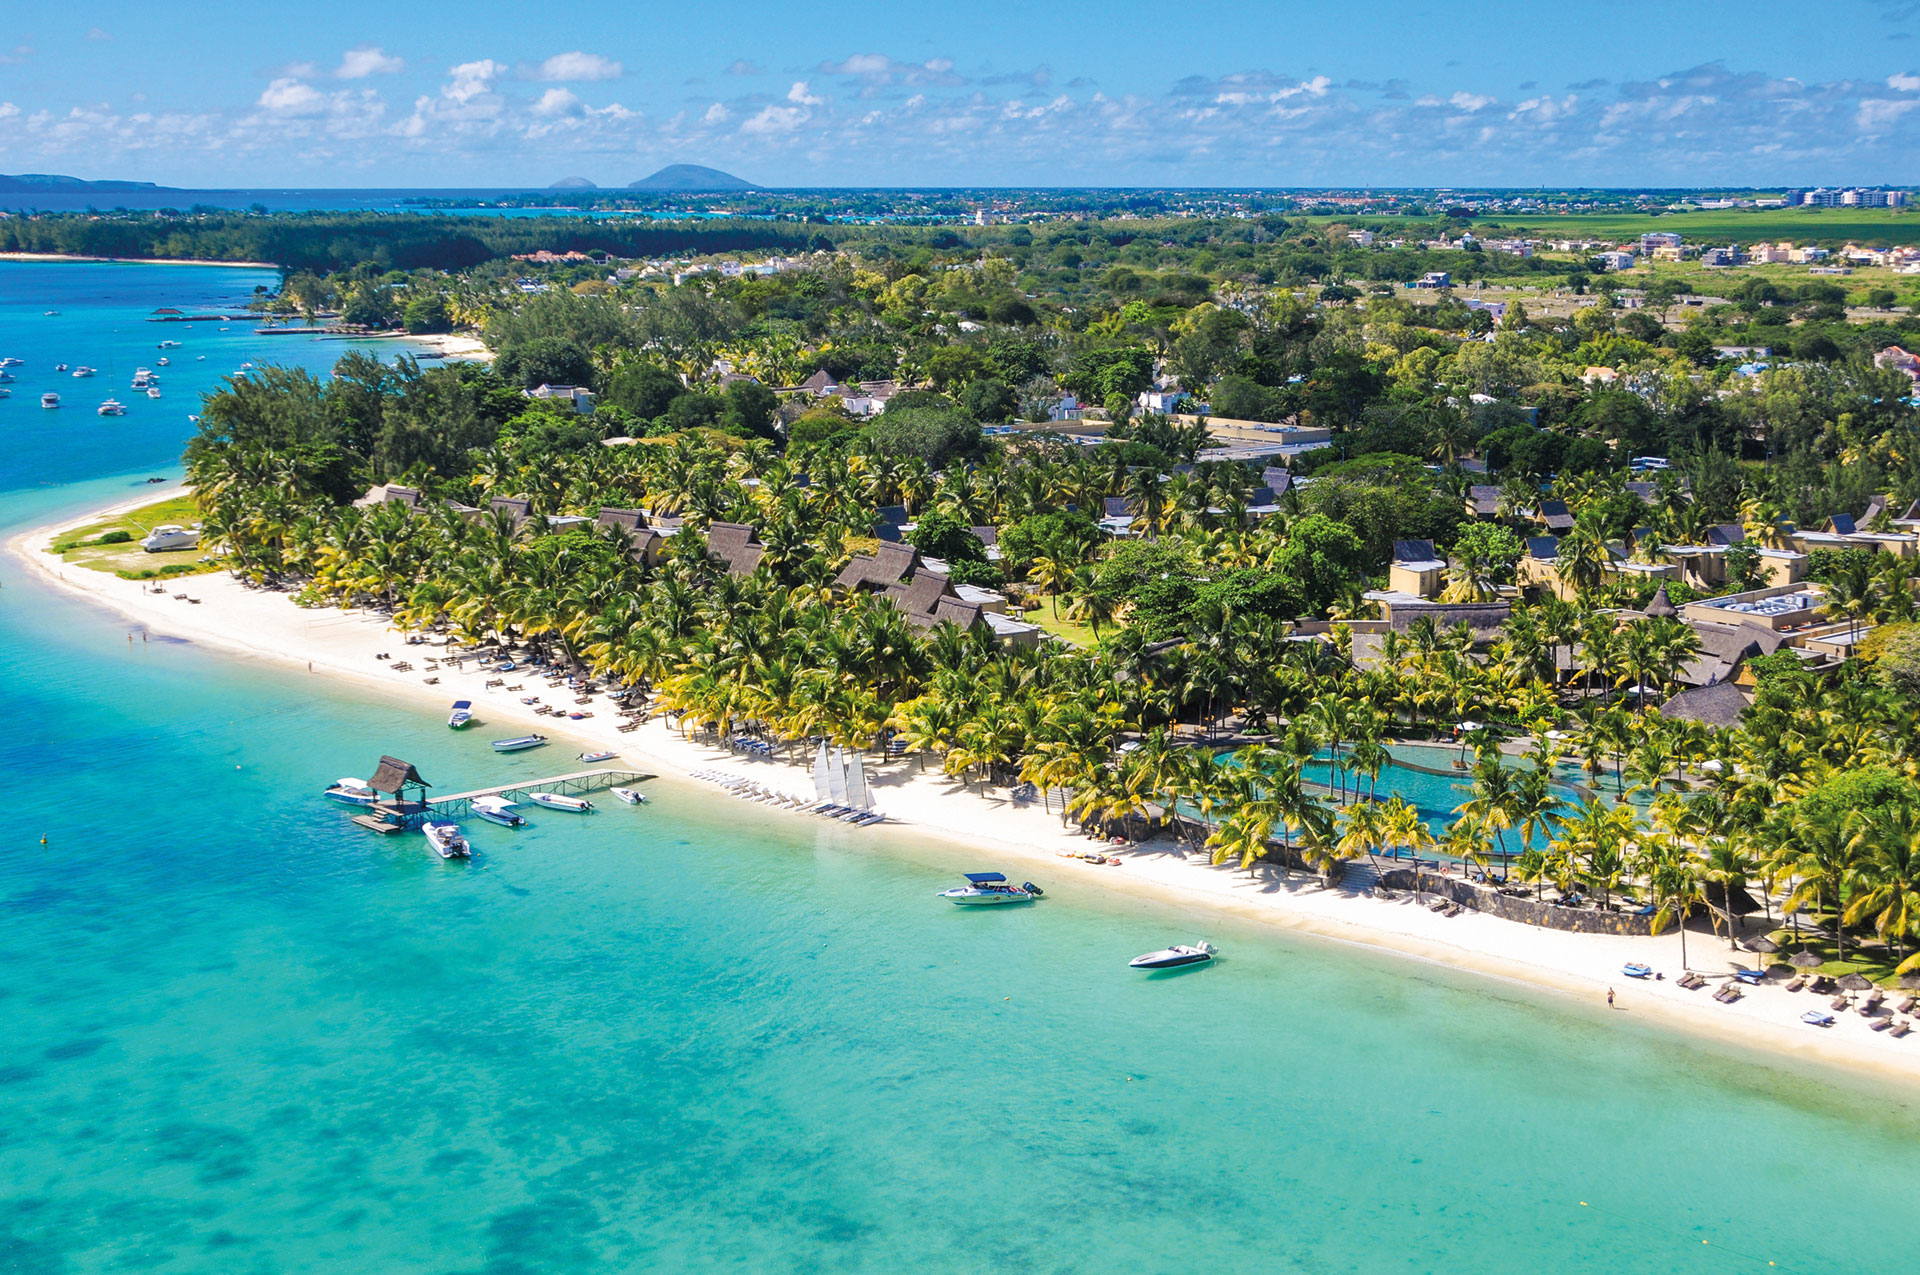 Hôtel Beachcomber Trou aux Biches cinq étoiles situé dans le nord ouest à l'île Maurice océan indien